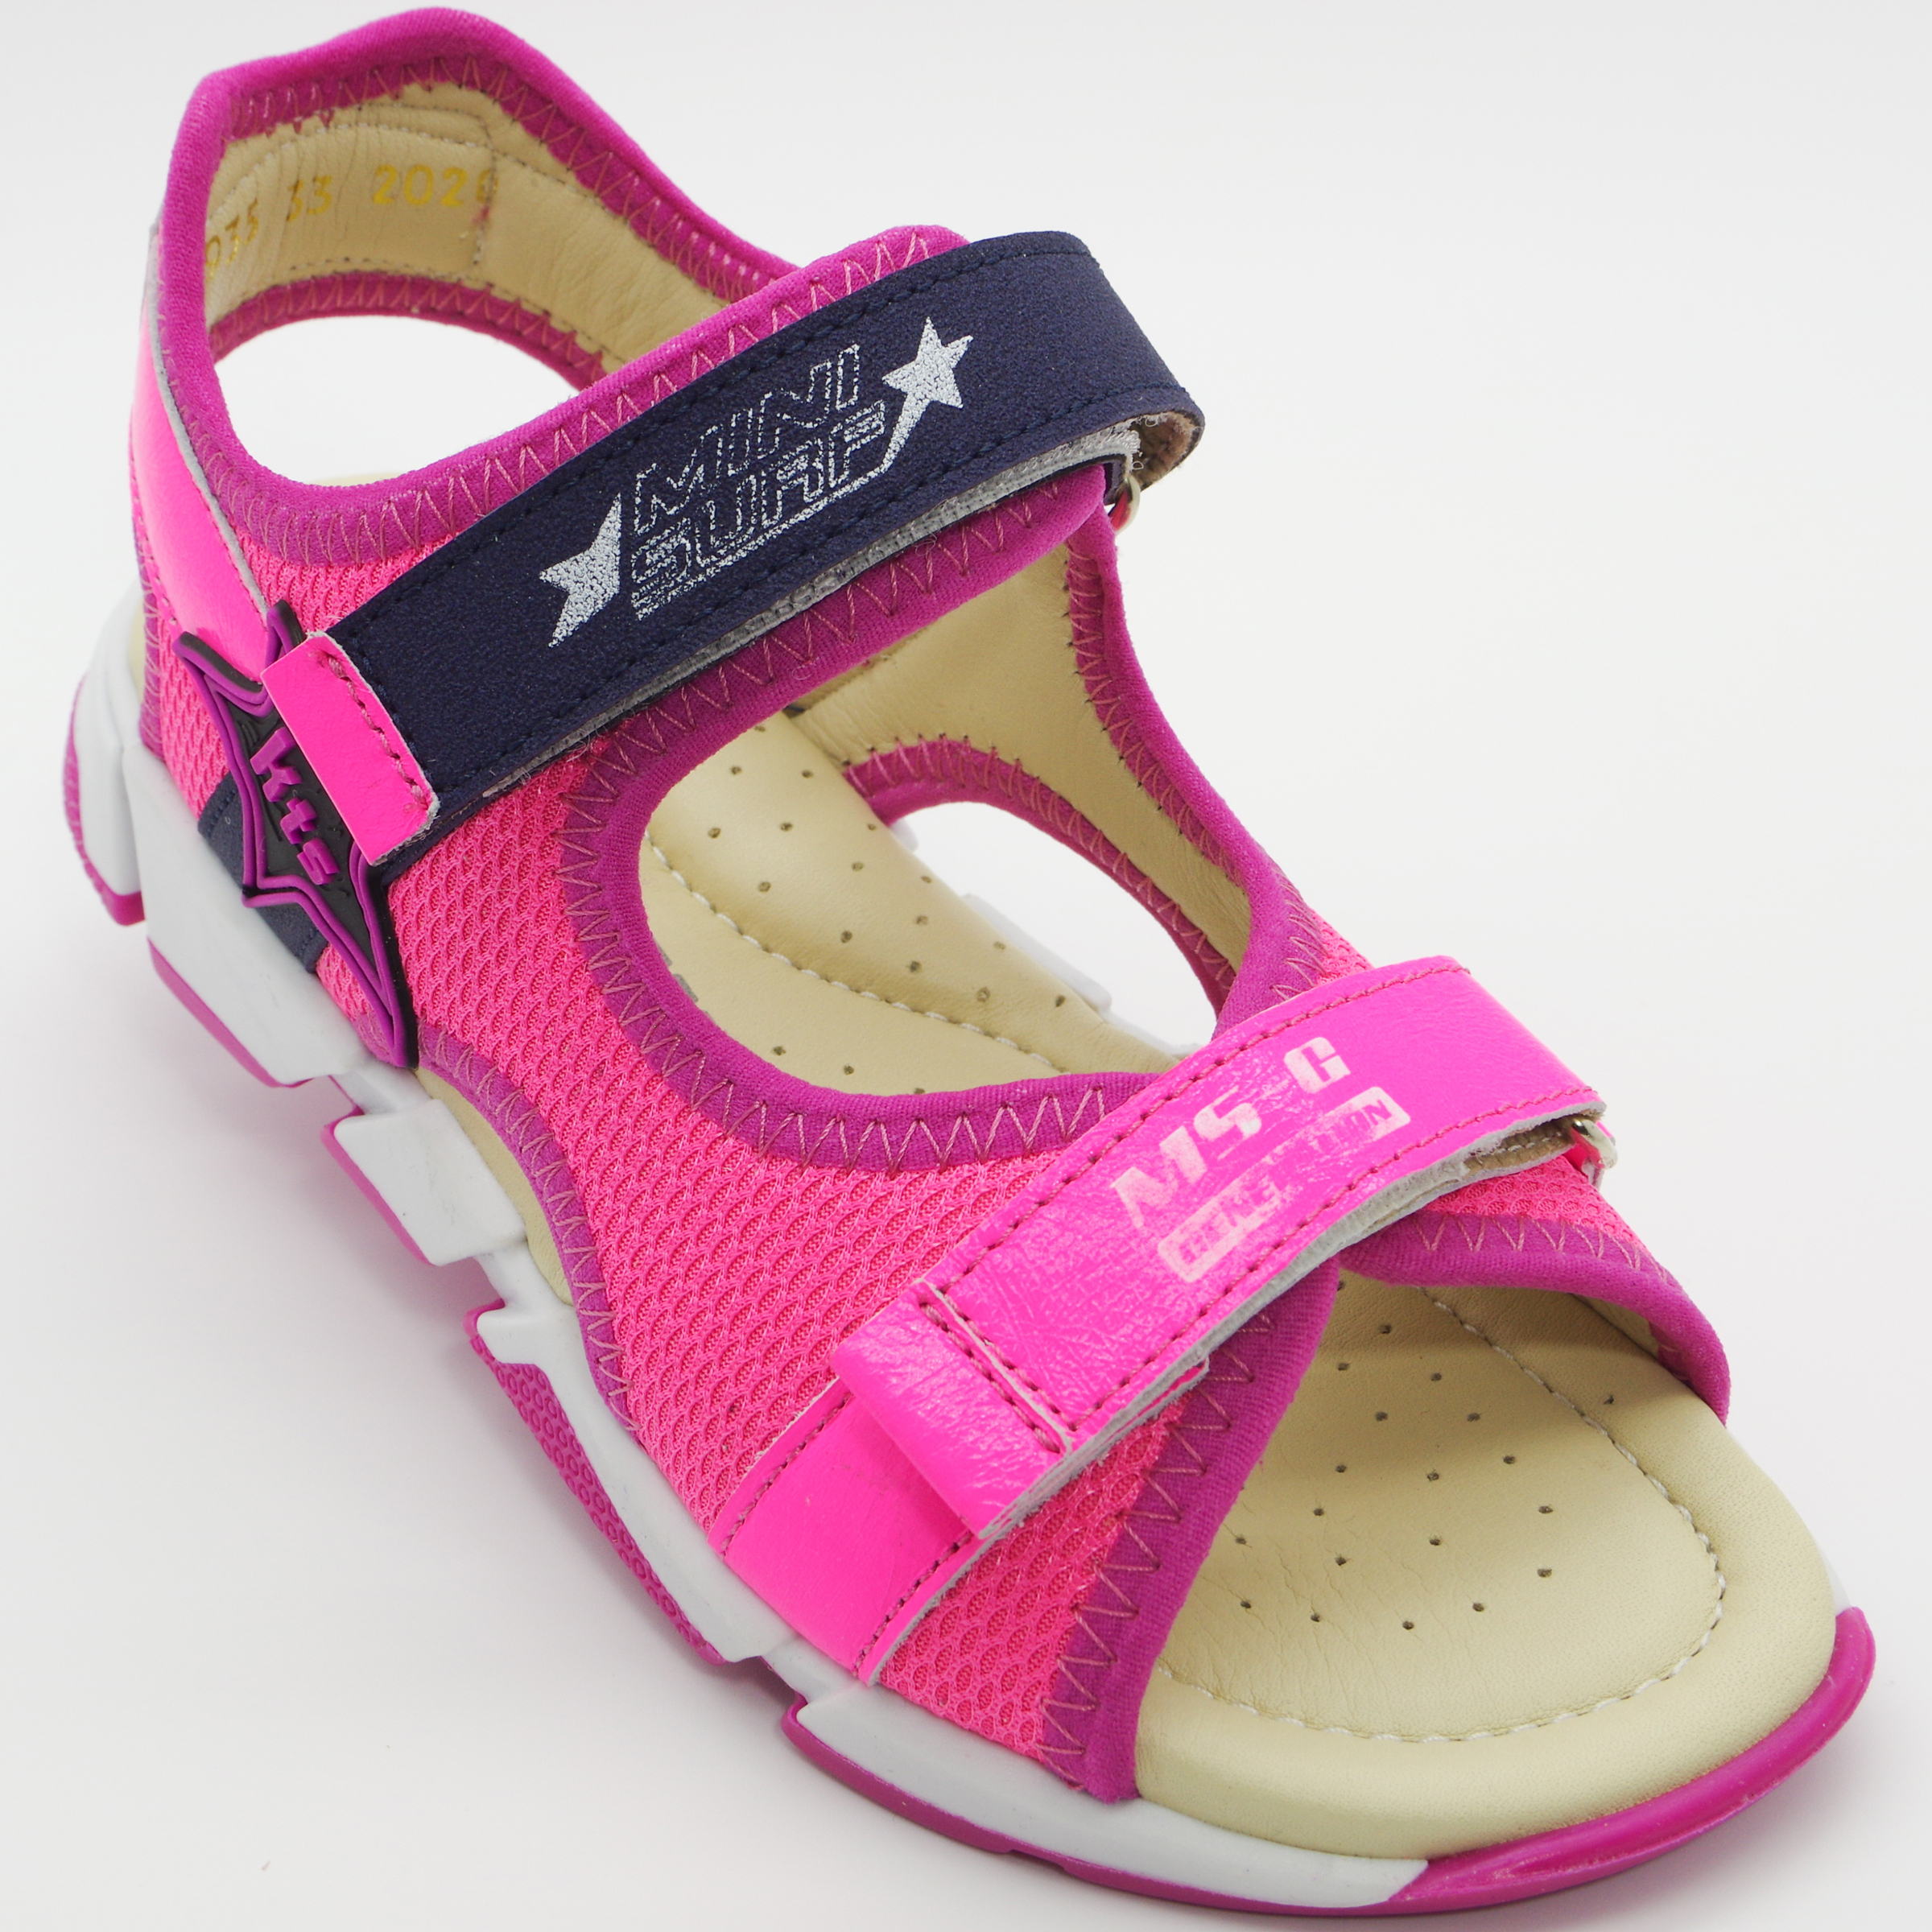 Спортивные босоножки (2098) материал Нубук, цвет Розовый  для девочки 31-36 размеры – Sole Kids. Фото 3